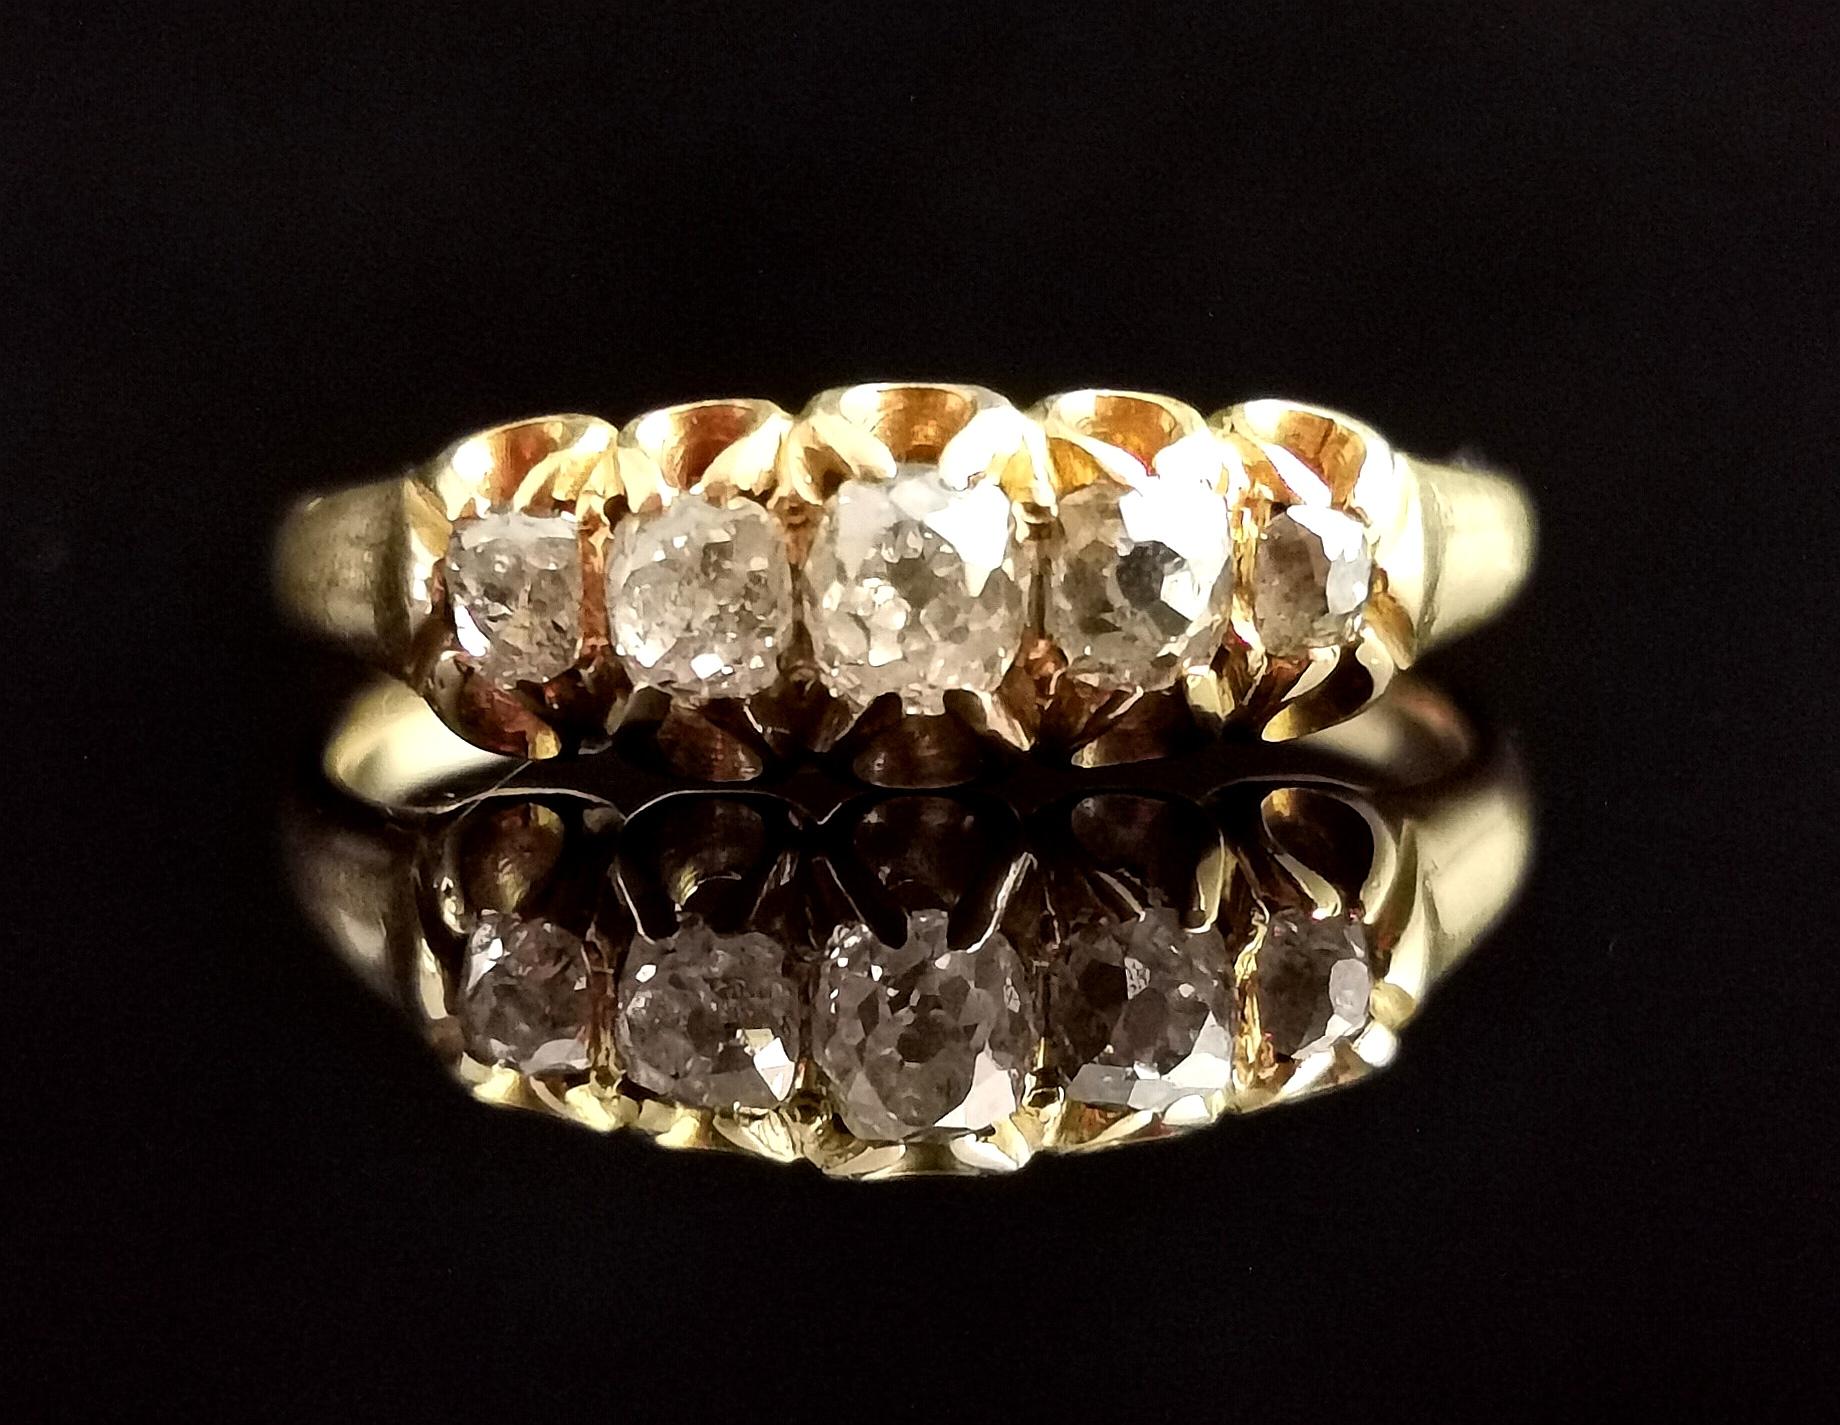 Eine atemberaubende antike, spätviktorianischen Ära fünf Stein Diamantring in 18kt Gelbgold.

Diese spektakuläre Schönheit weist fünf abgestufte Diamanten im Altschliff auf, von denen der größte der Mittelstein ist.

Die Diamanten haben ein